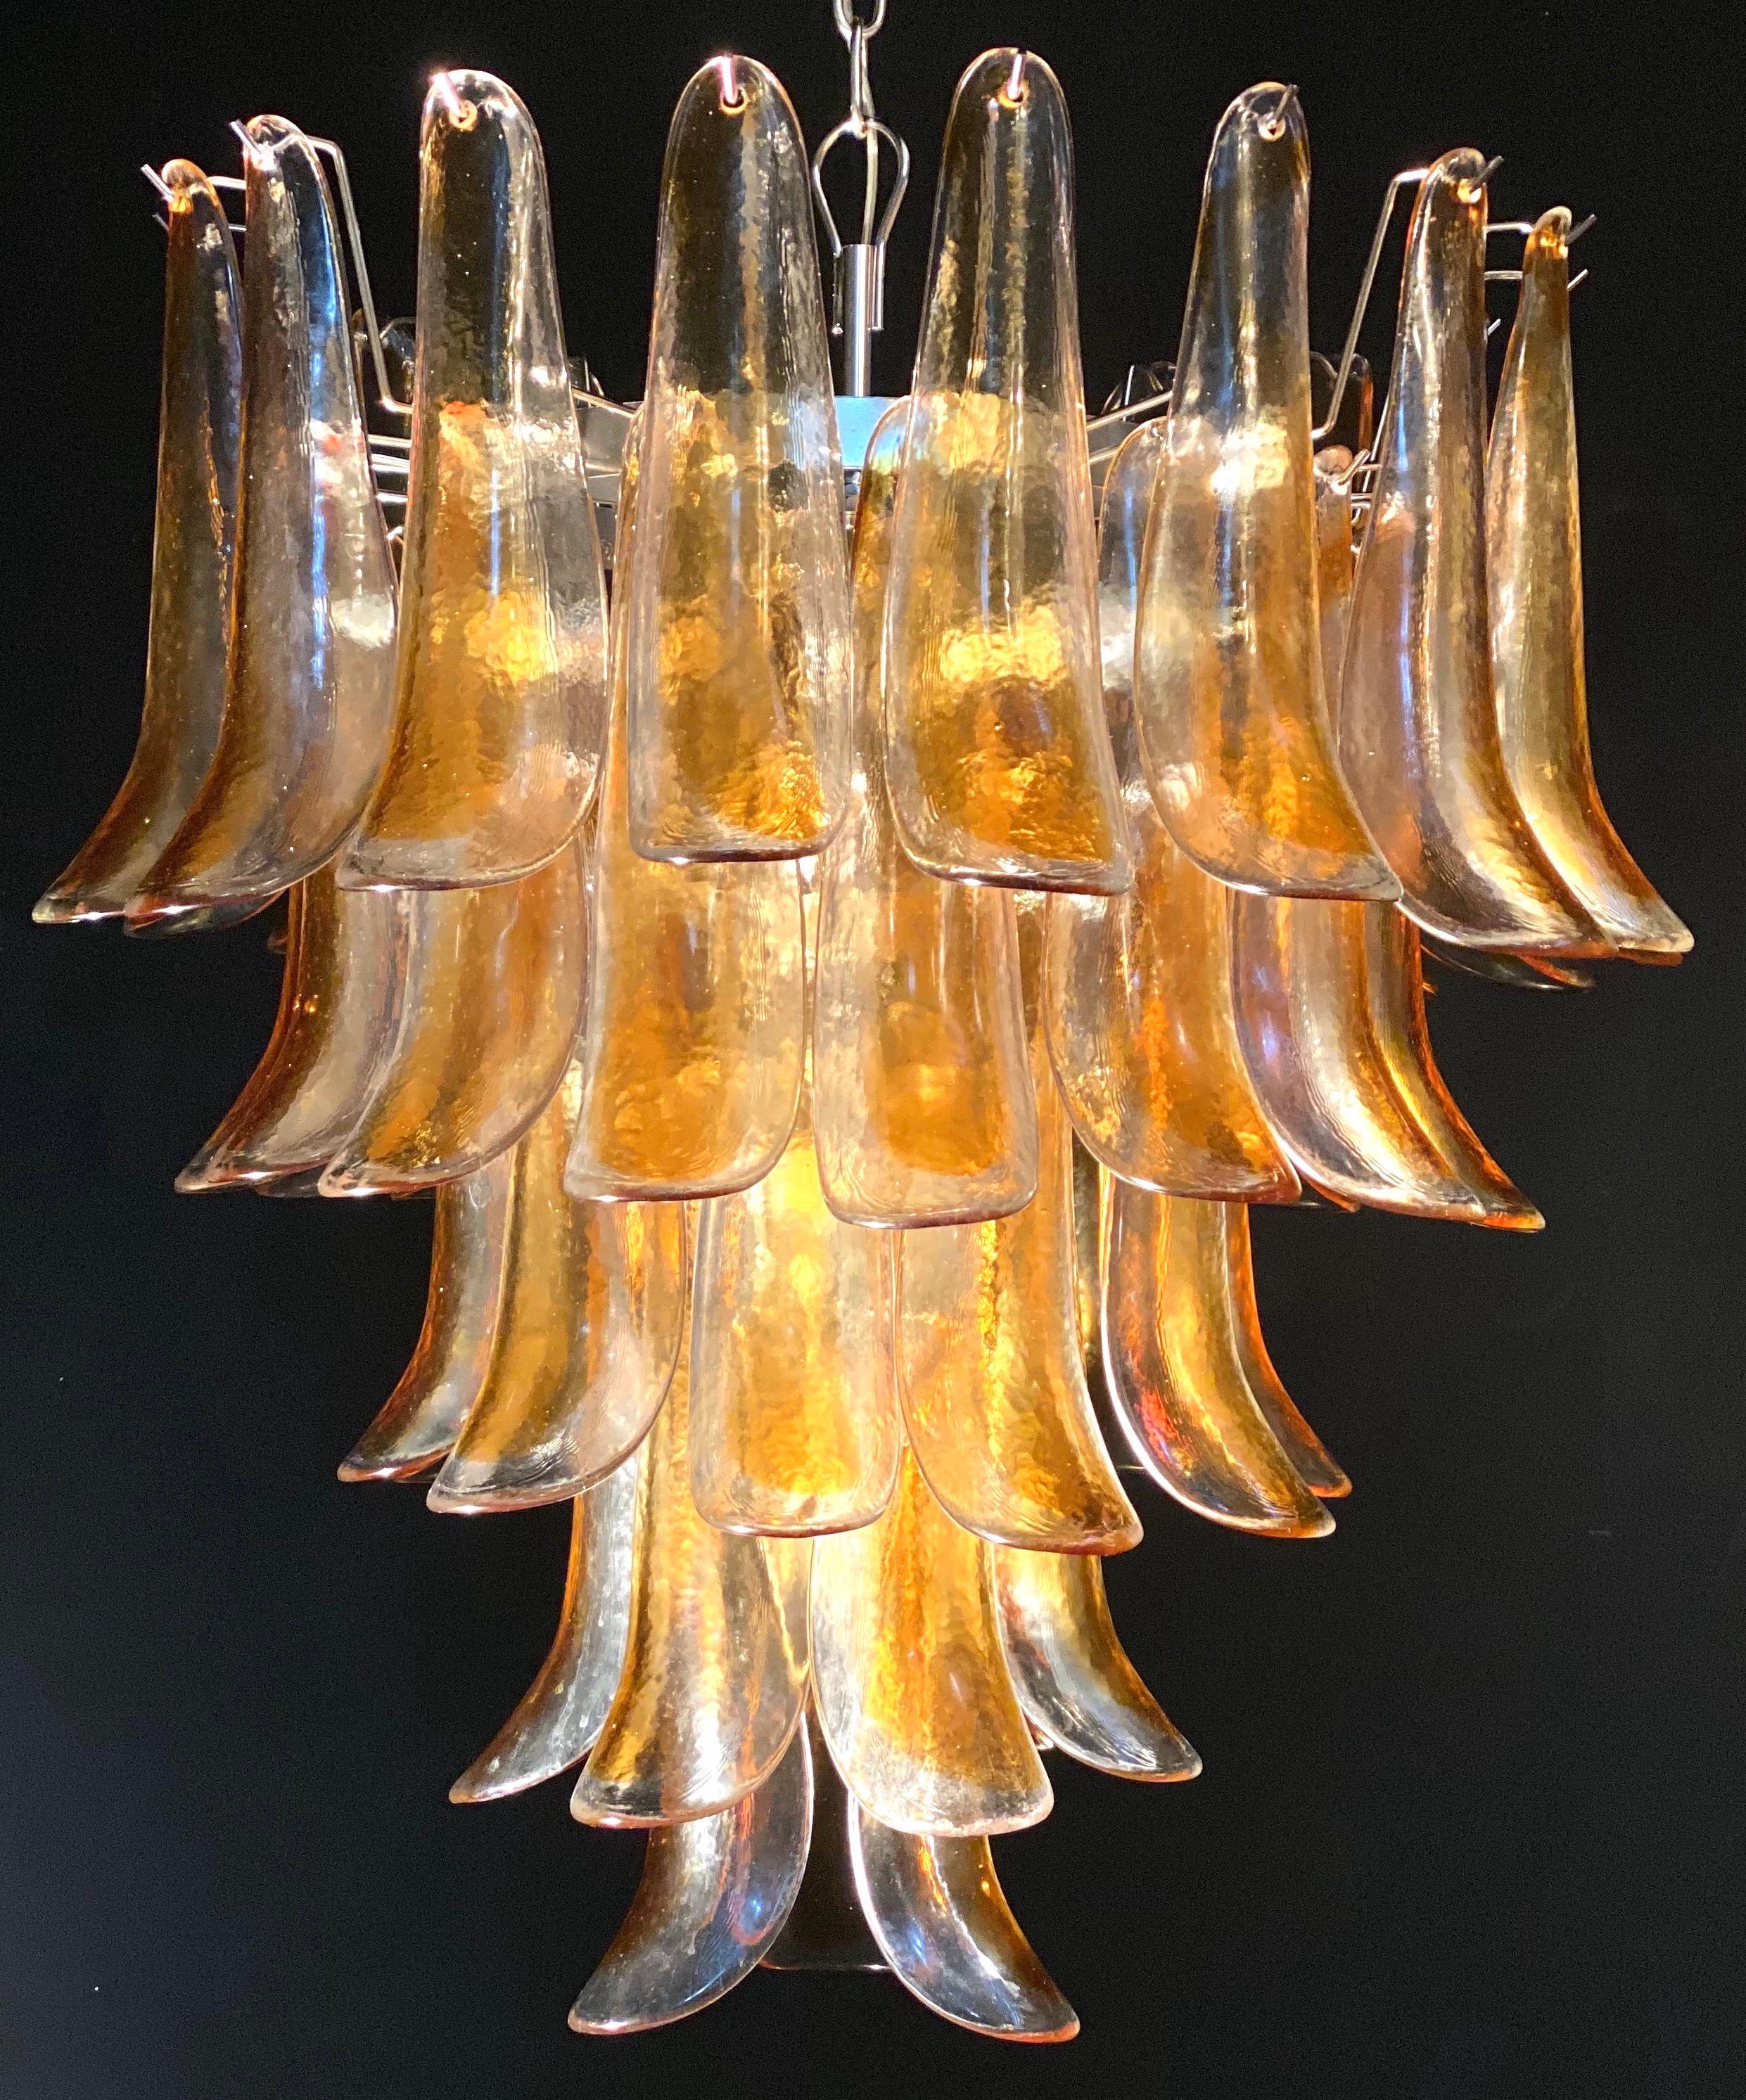 Italienischer Murano-Kronleuchter im Vintage-Stil, bestehend aus 52 Blütenblättern aus klarem Braunglas, die von einem Chromrahmen getragen werden.
Die klare Bernsteinfarbe der Gläser erzeugt einen fabelhaften warmen Lichteffekt.
Zeitraum: